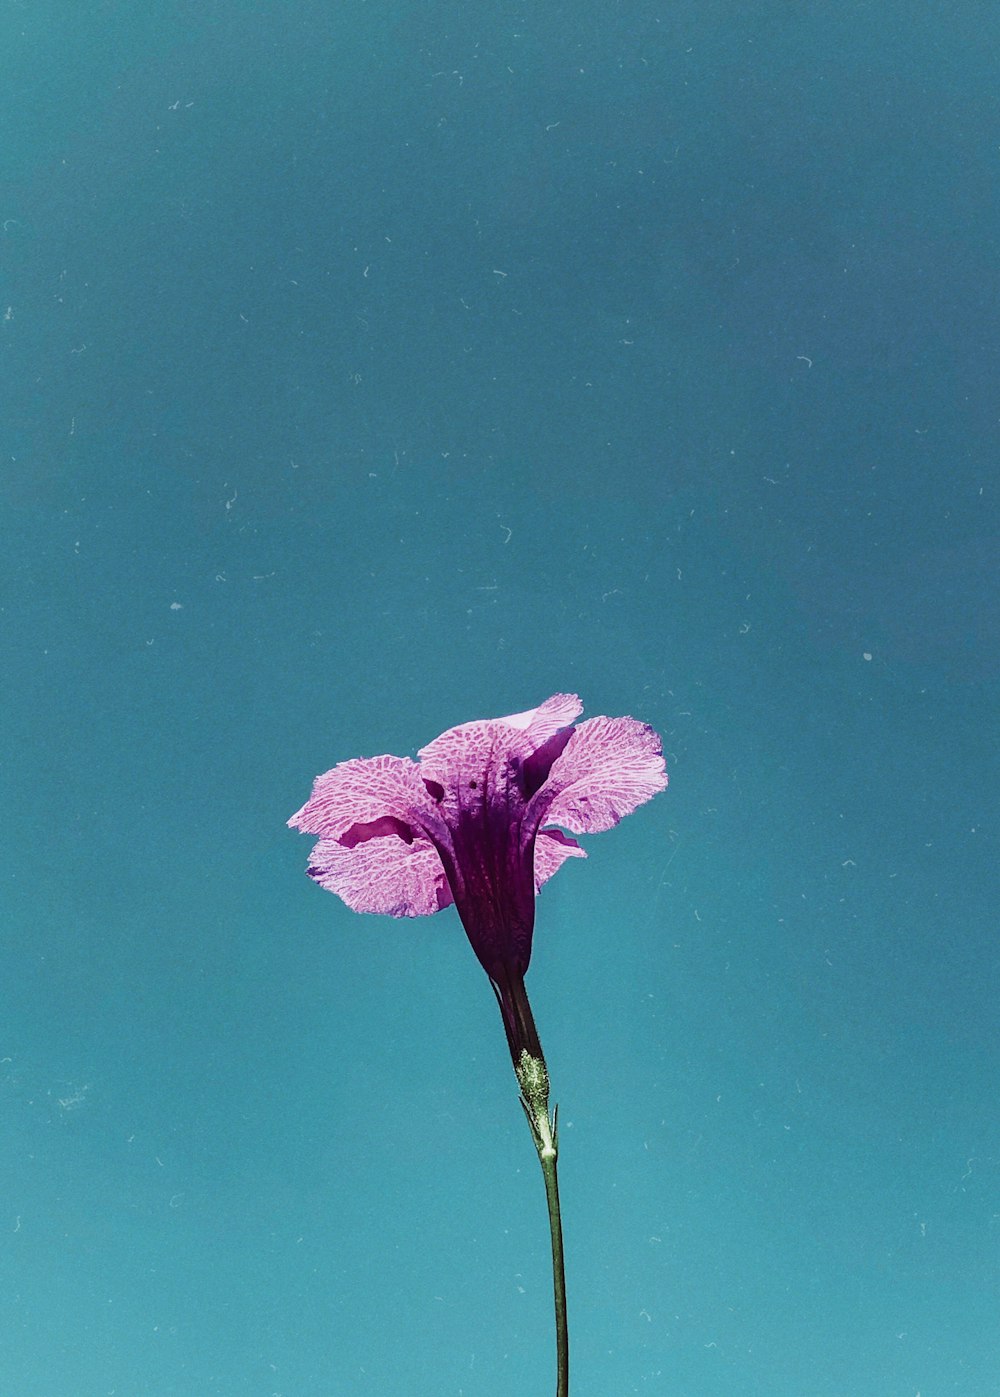 blooming purple petaled flower